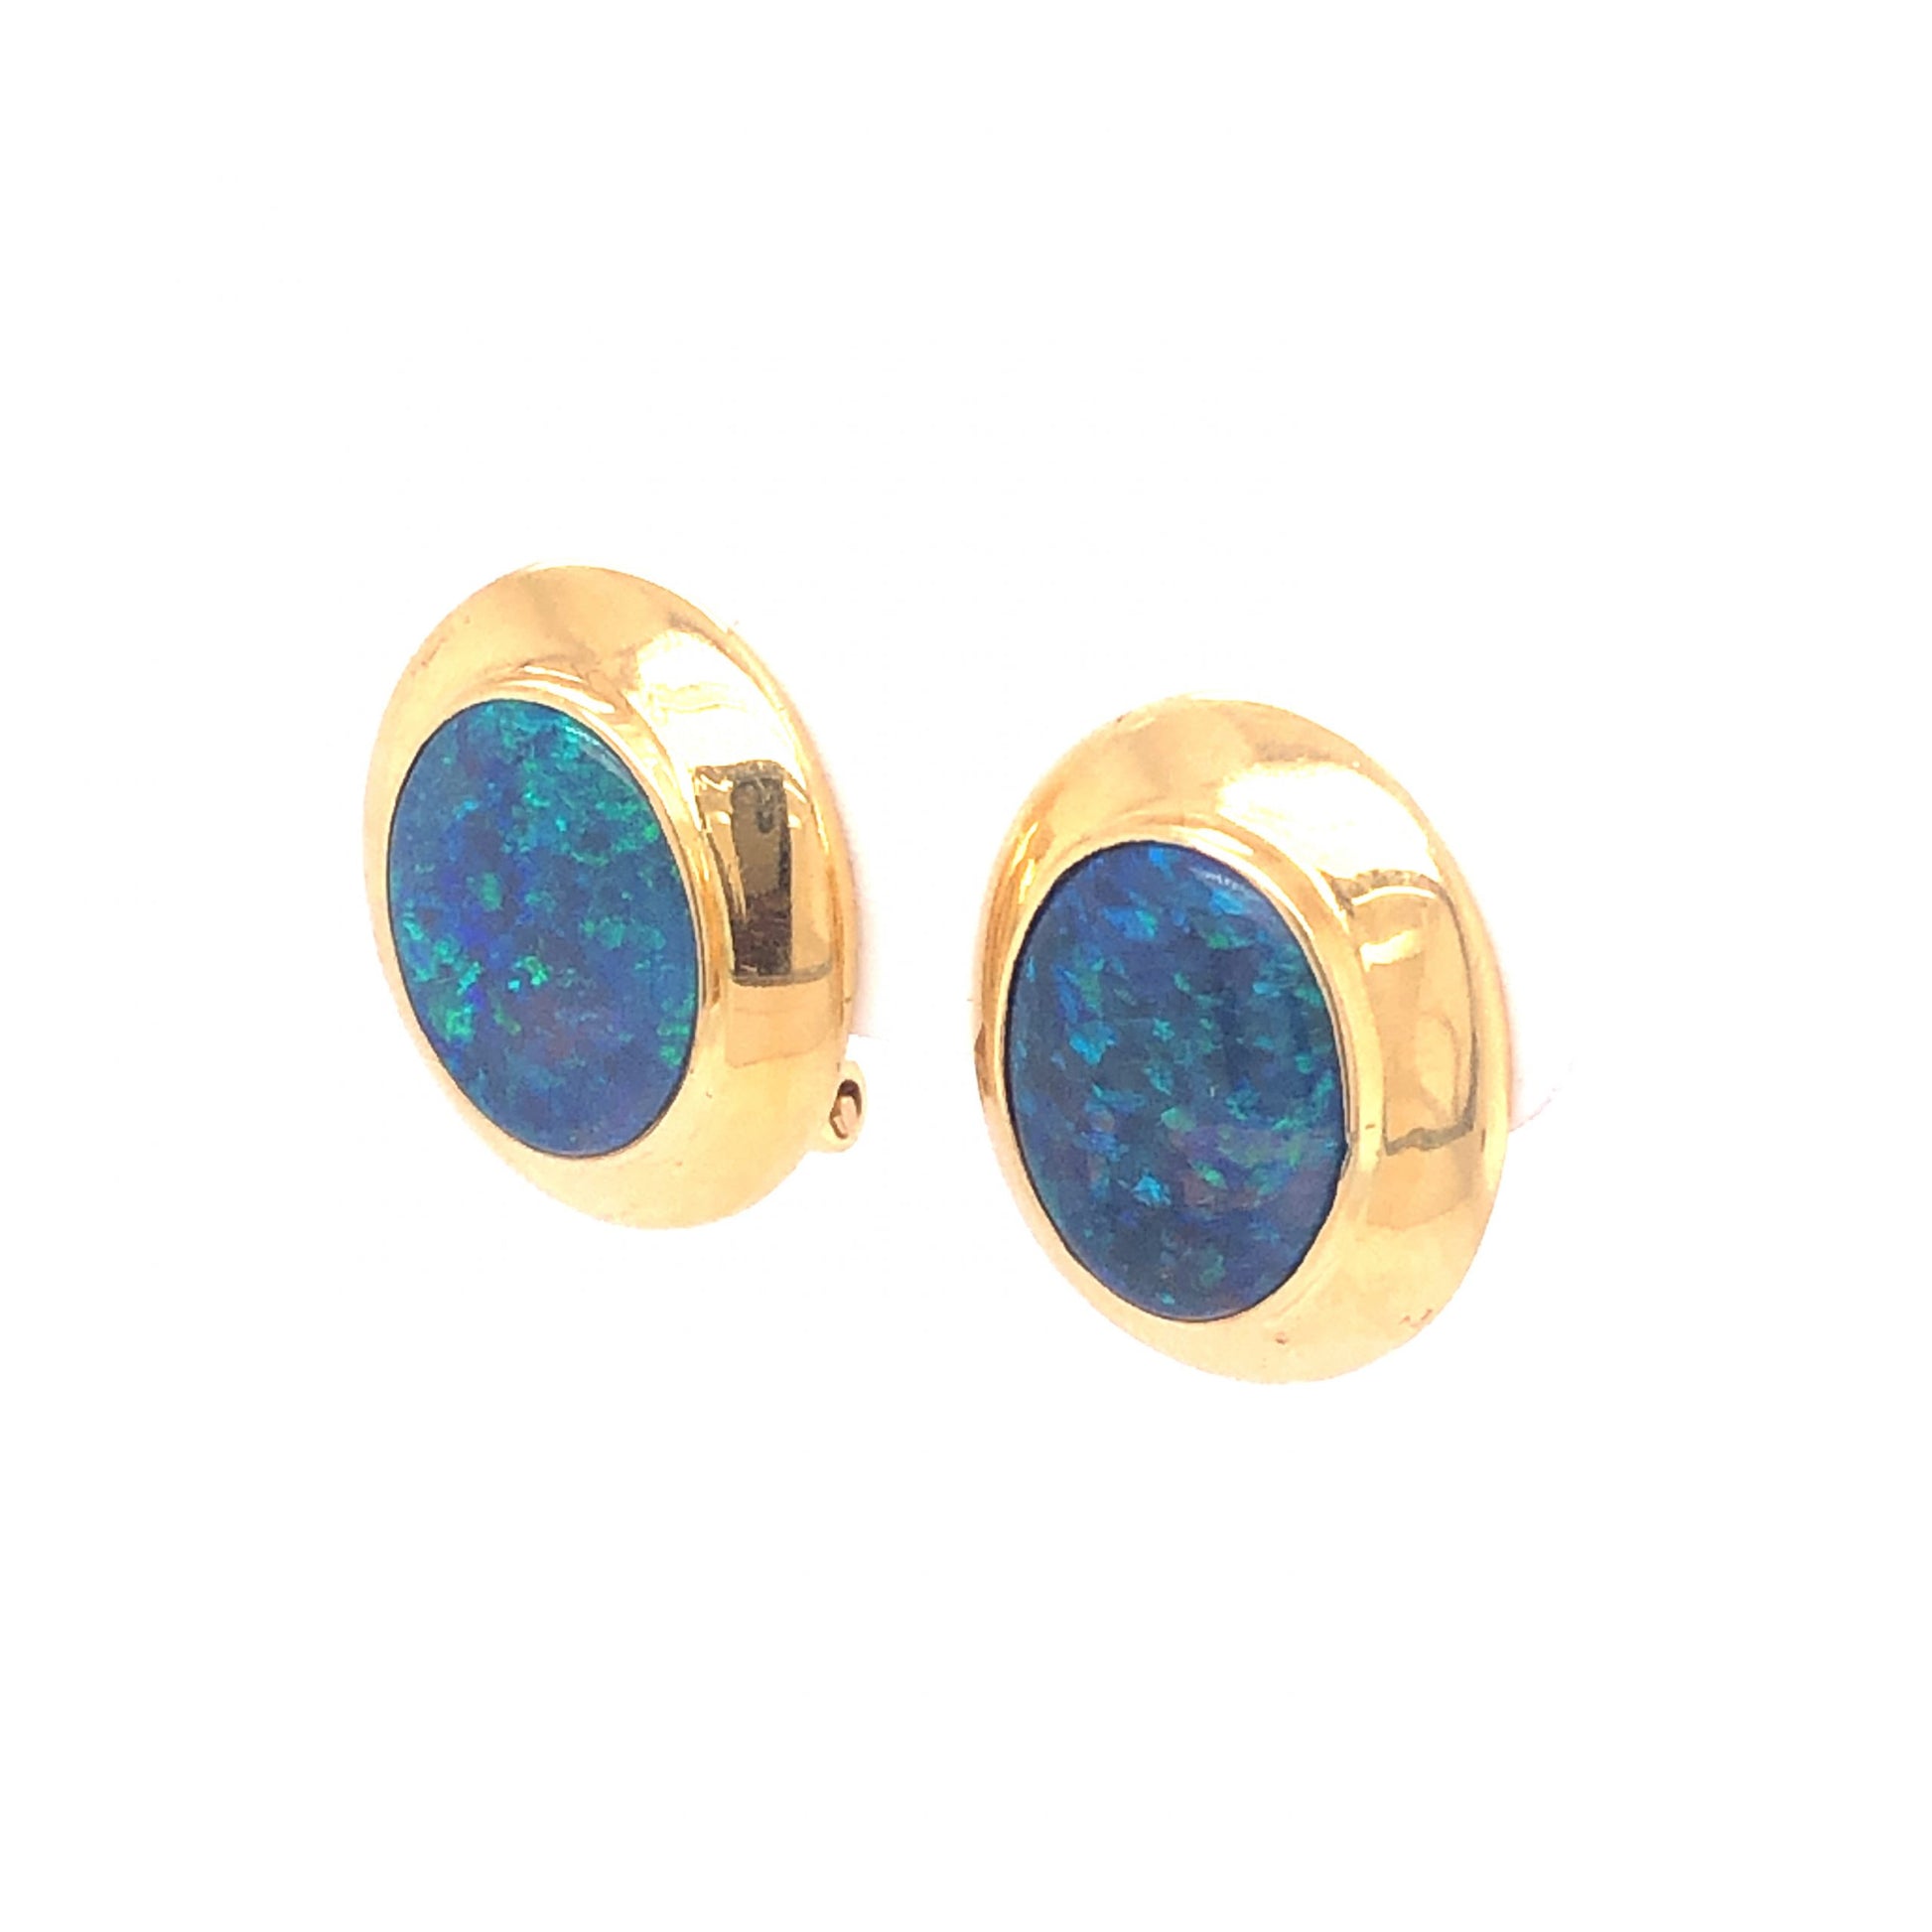 4.17 Carat Opal Earrings in 18k Yellow Gold